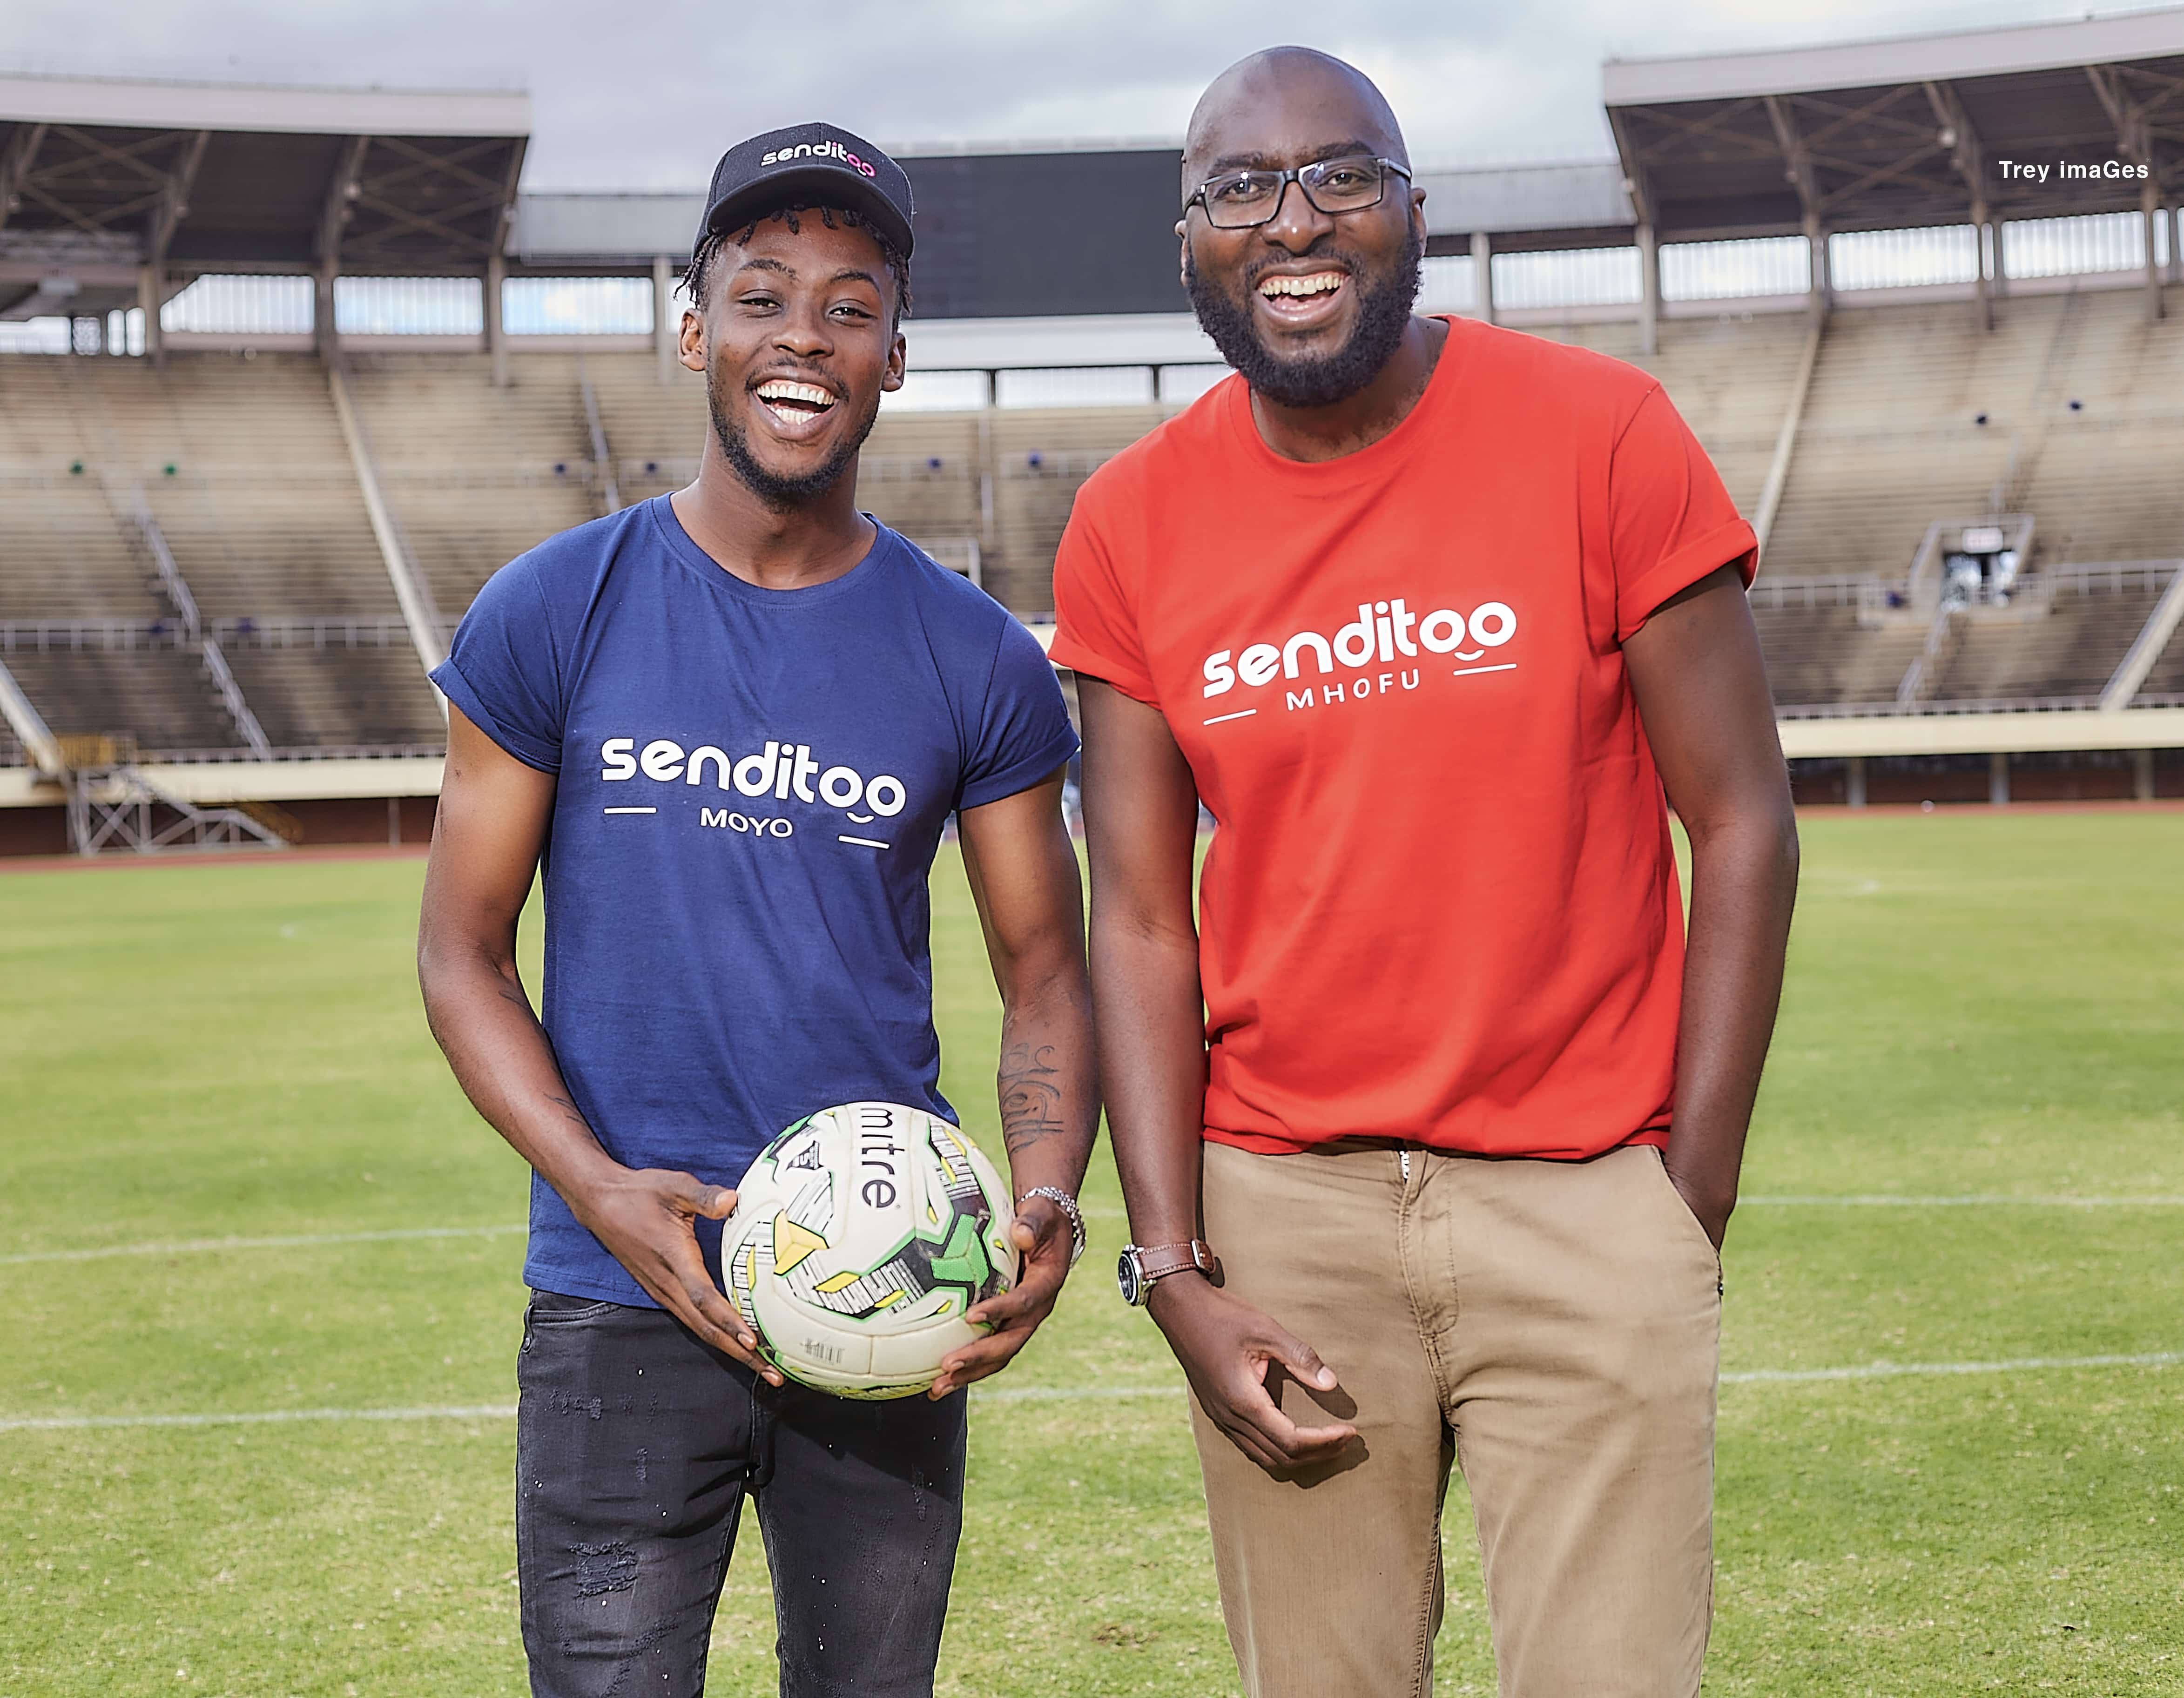 Olympique Lyonnais player Tino Kadewere becomes Senditoo brand ambassador